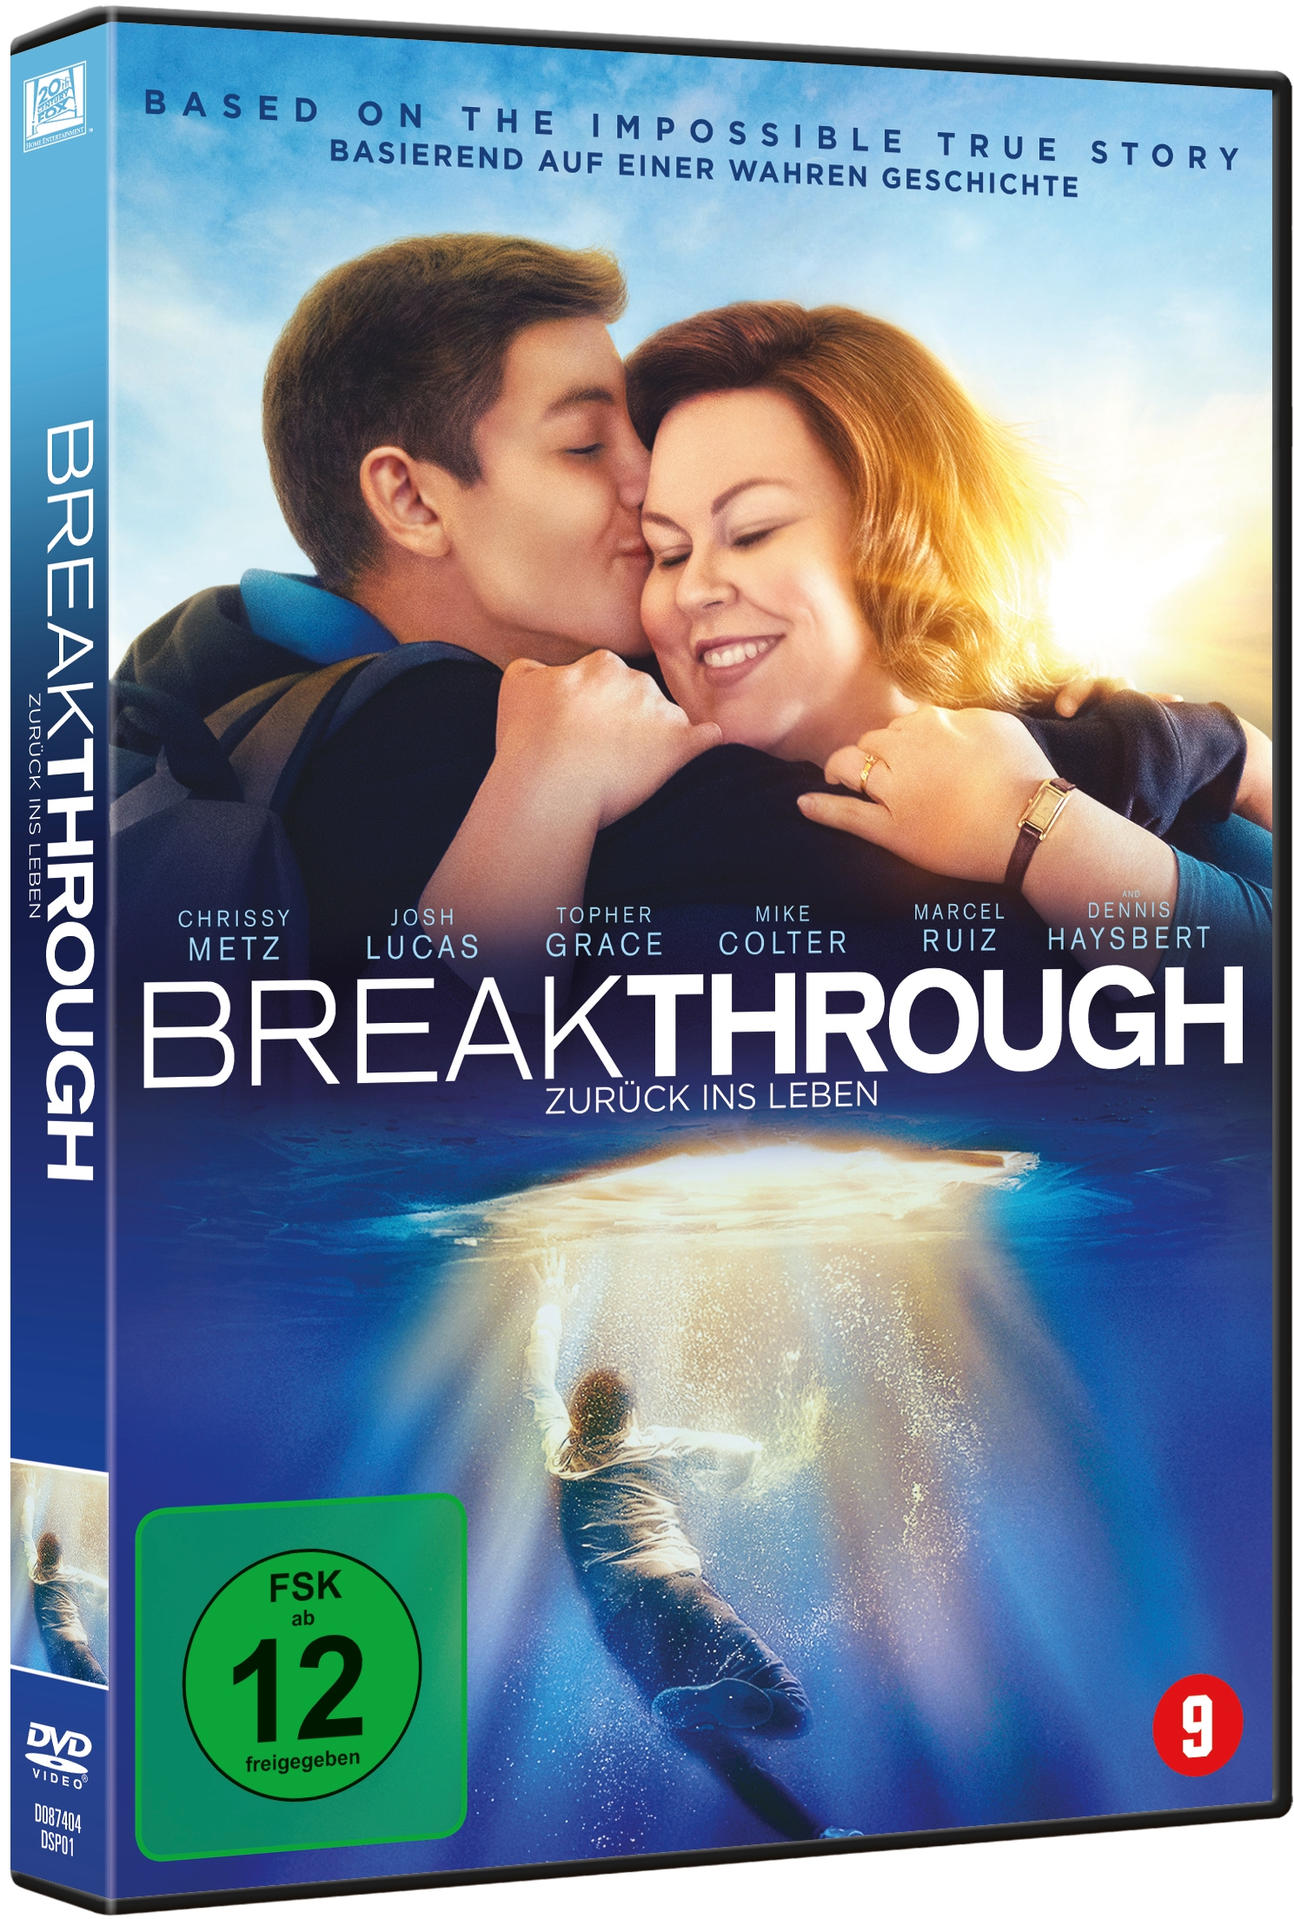 ins Zurück - DVD Breakthrough Leben